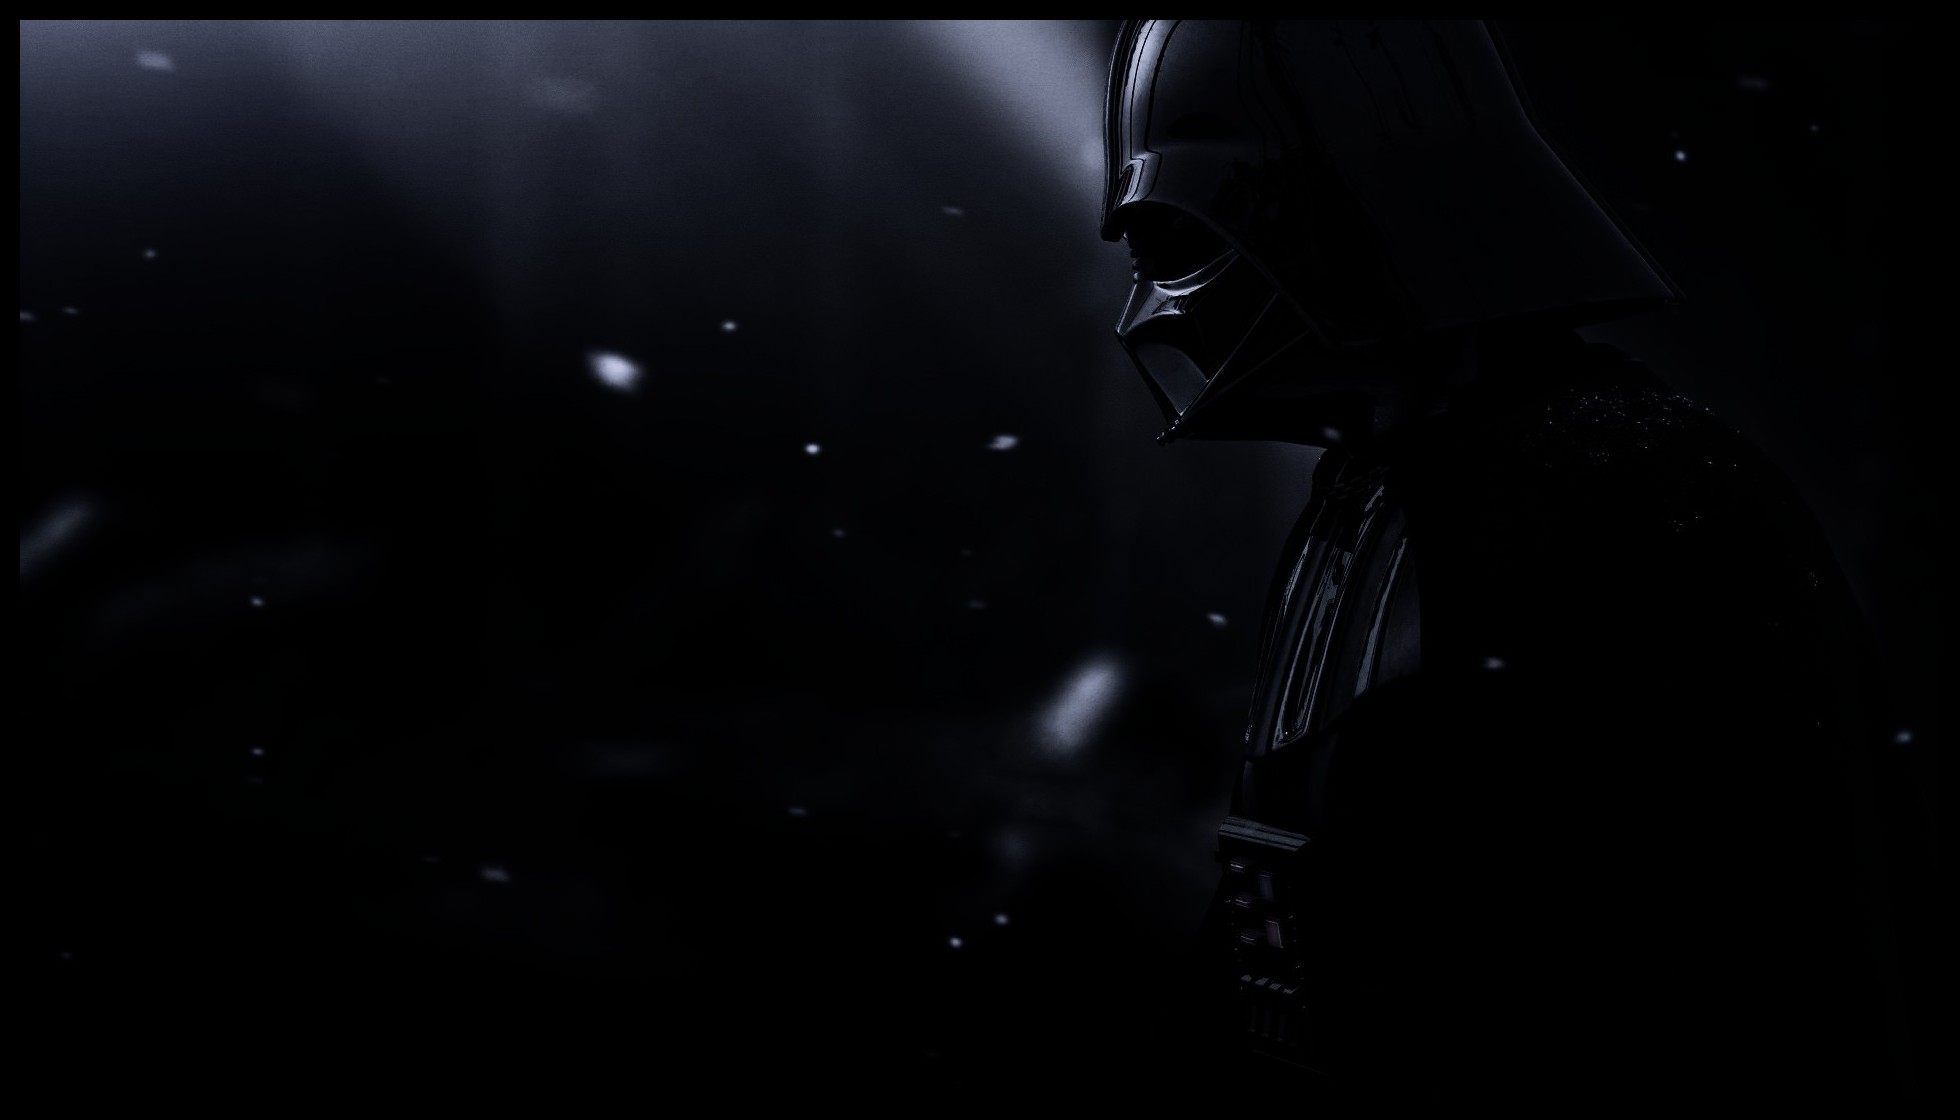 Darth Vader From Star Wars Gotham HD Wallpaper Hot